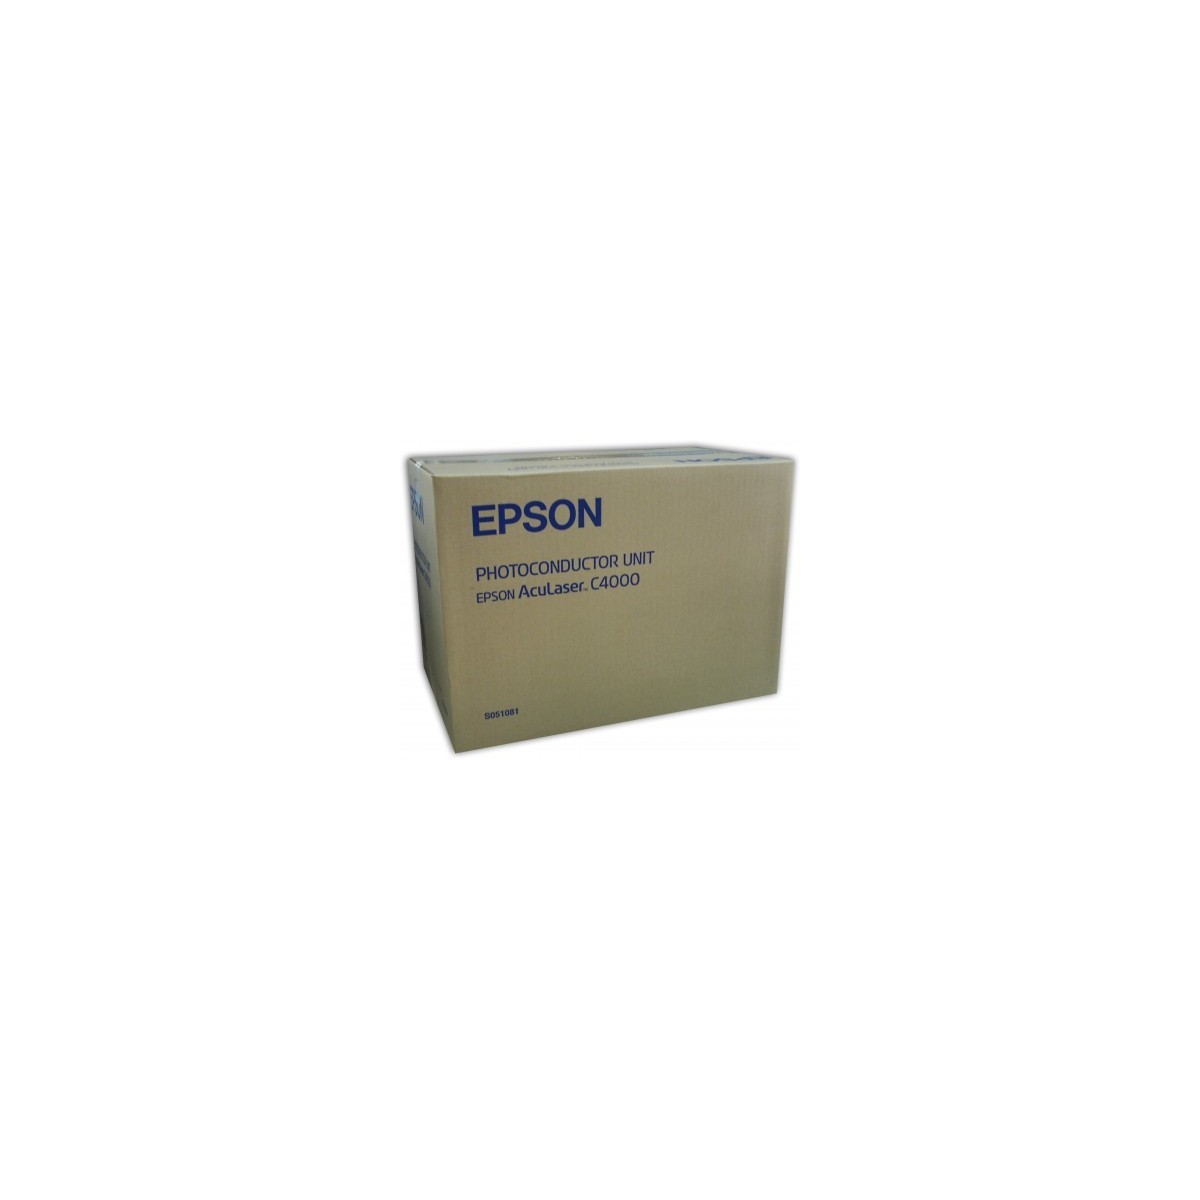 Epson AcuLaser C4000 - Drum Cartridge 30,000 sheet